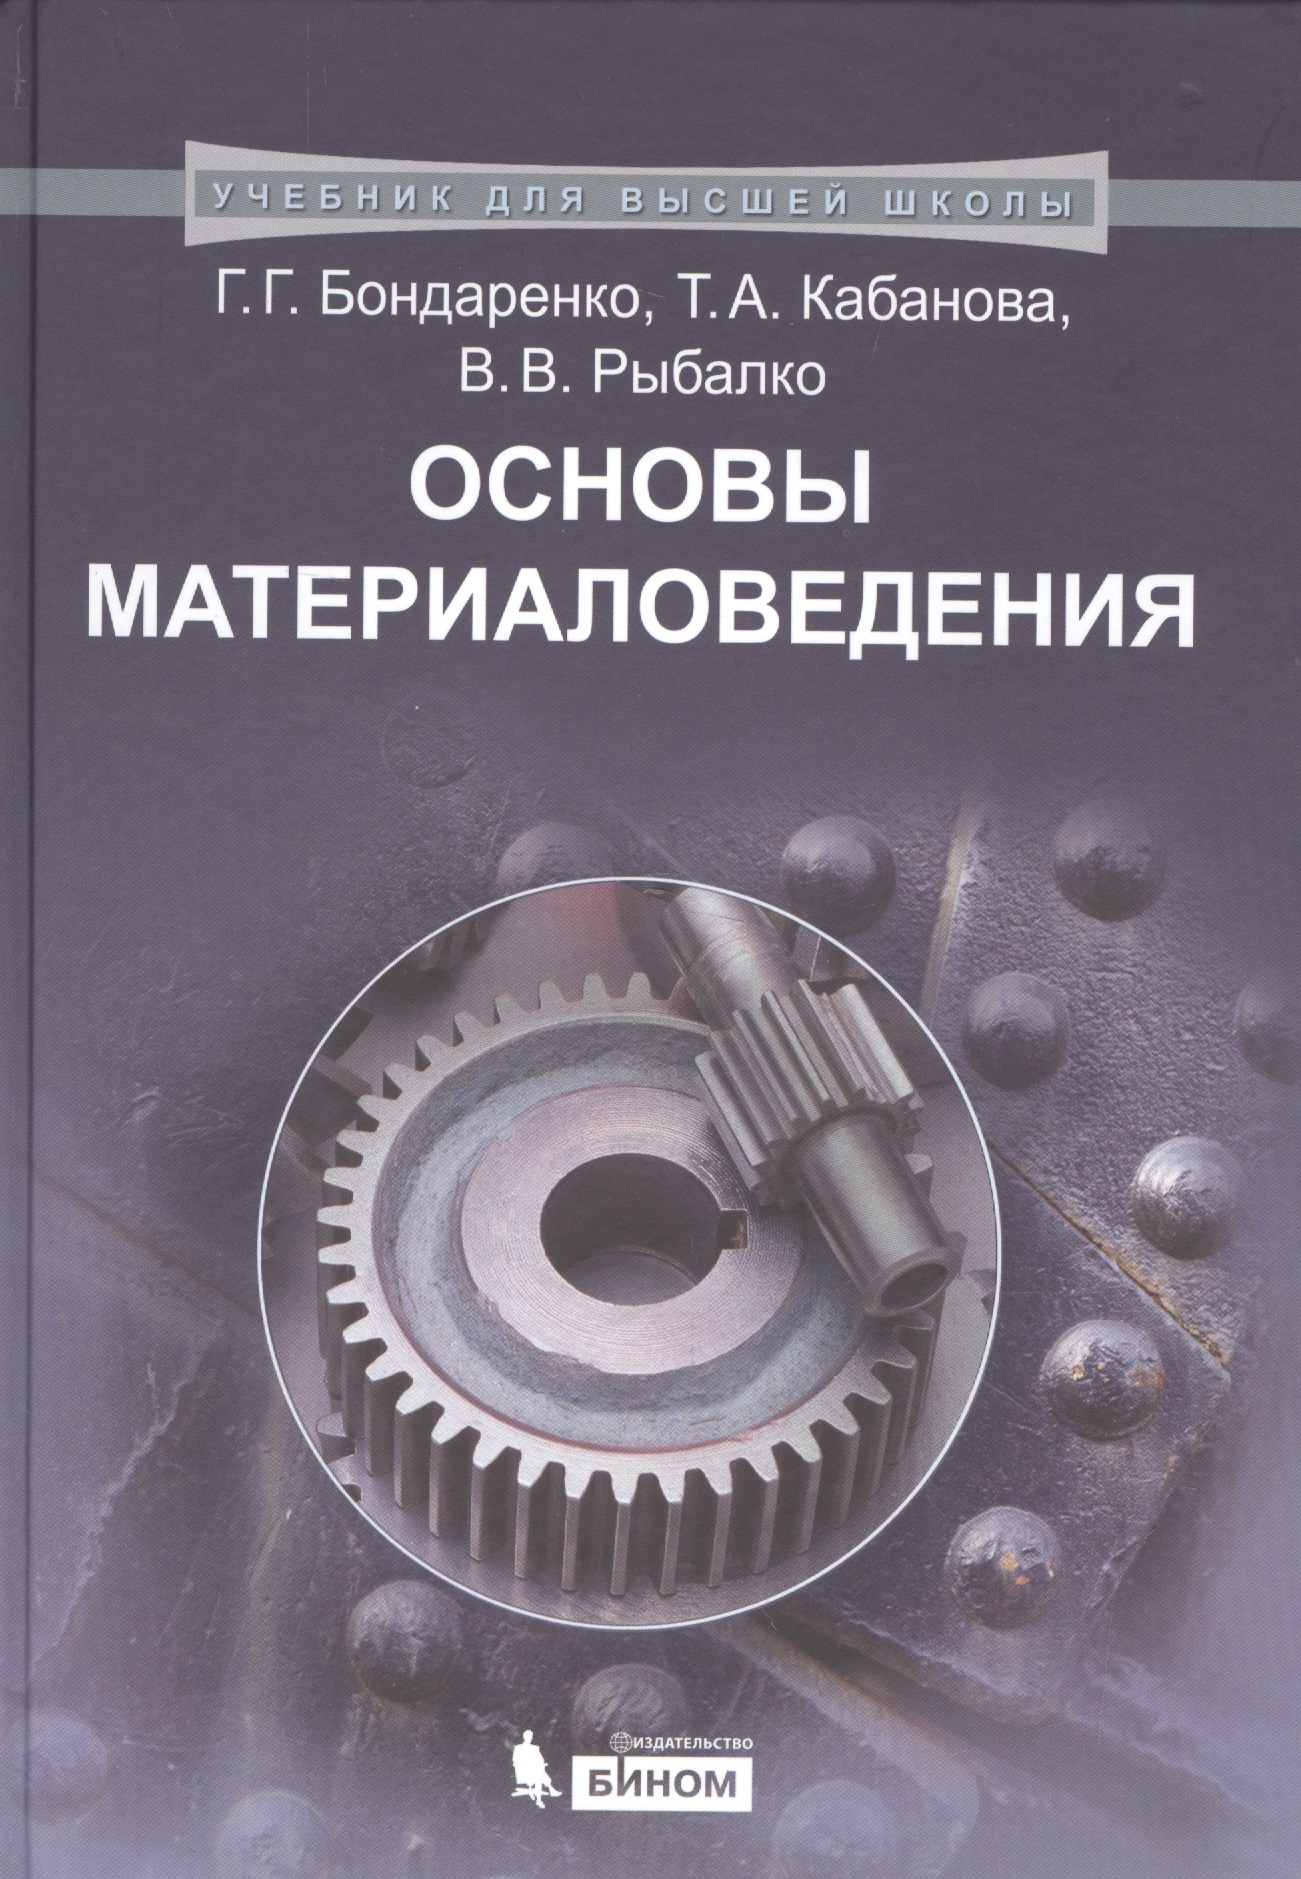 бондаренко г г основы материаловедения учебник Основы материаловедения: учебник